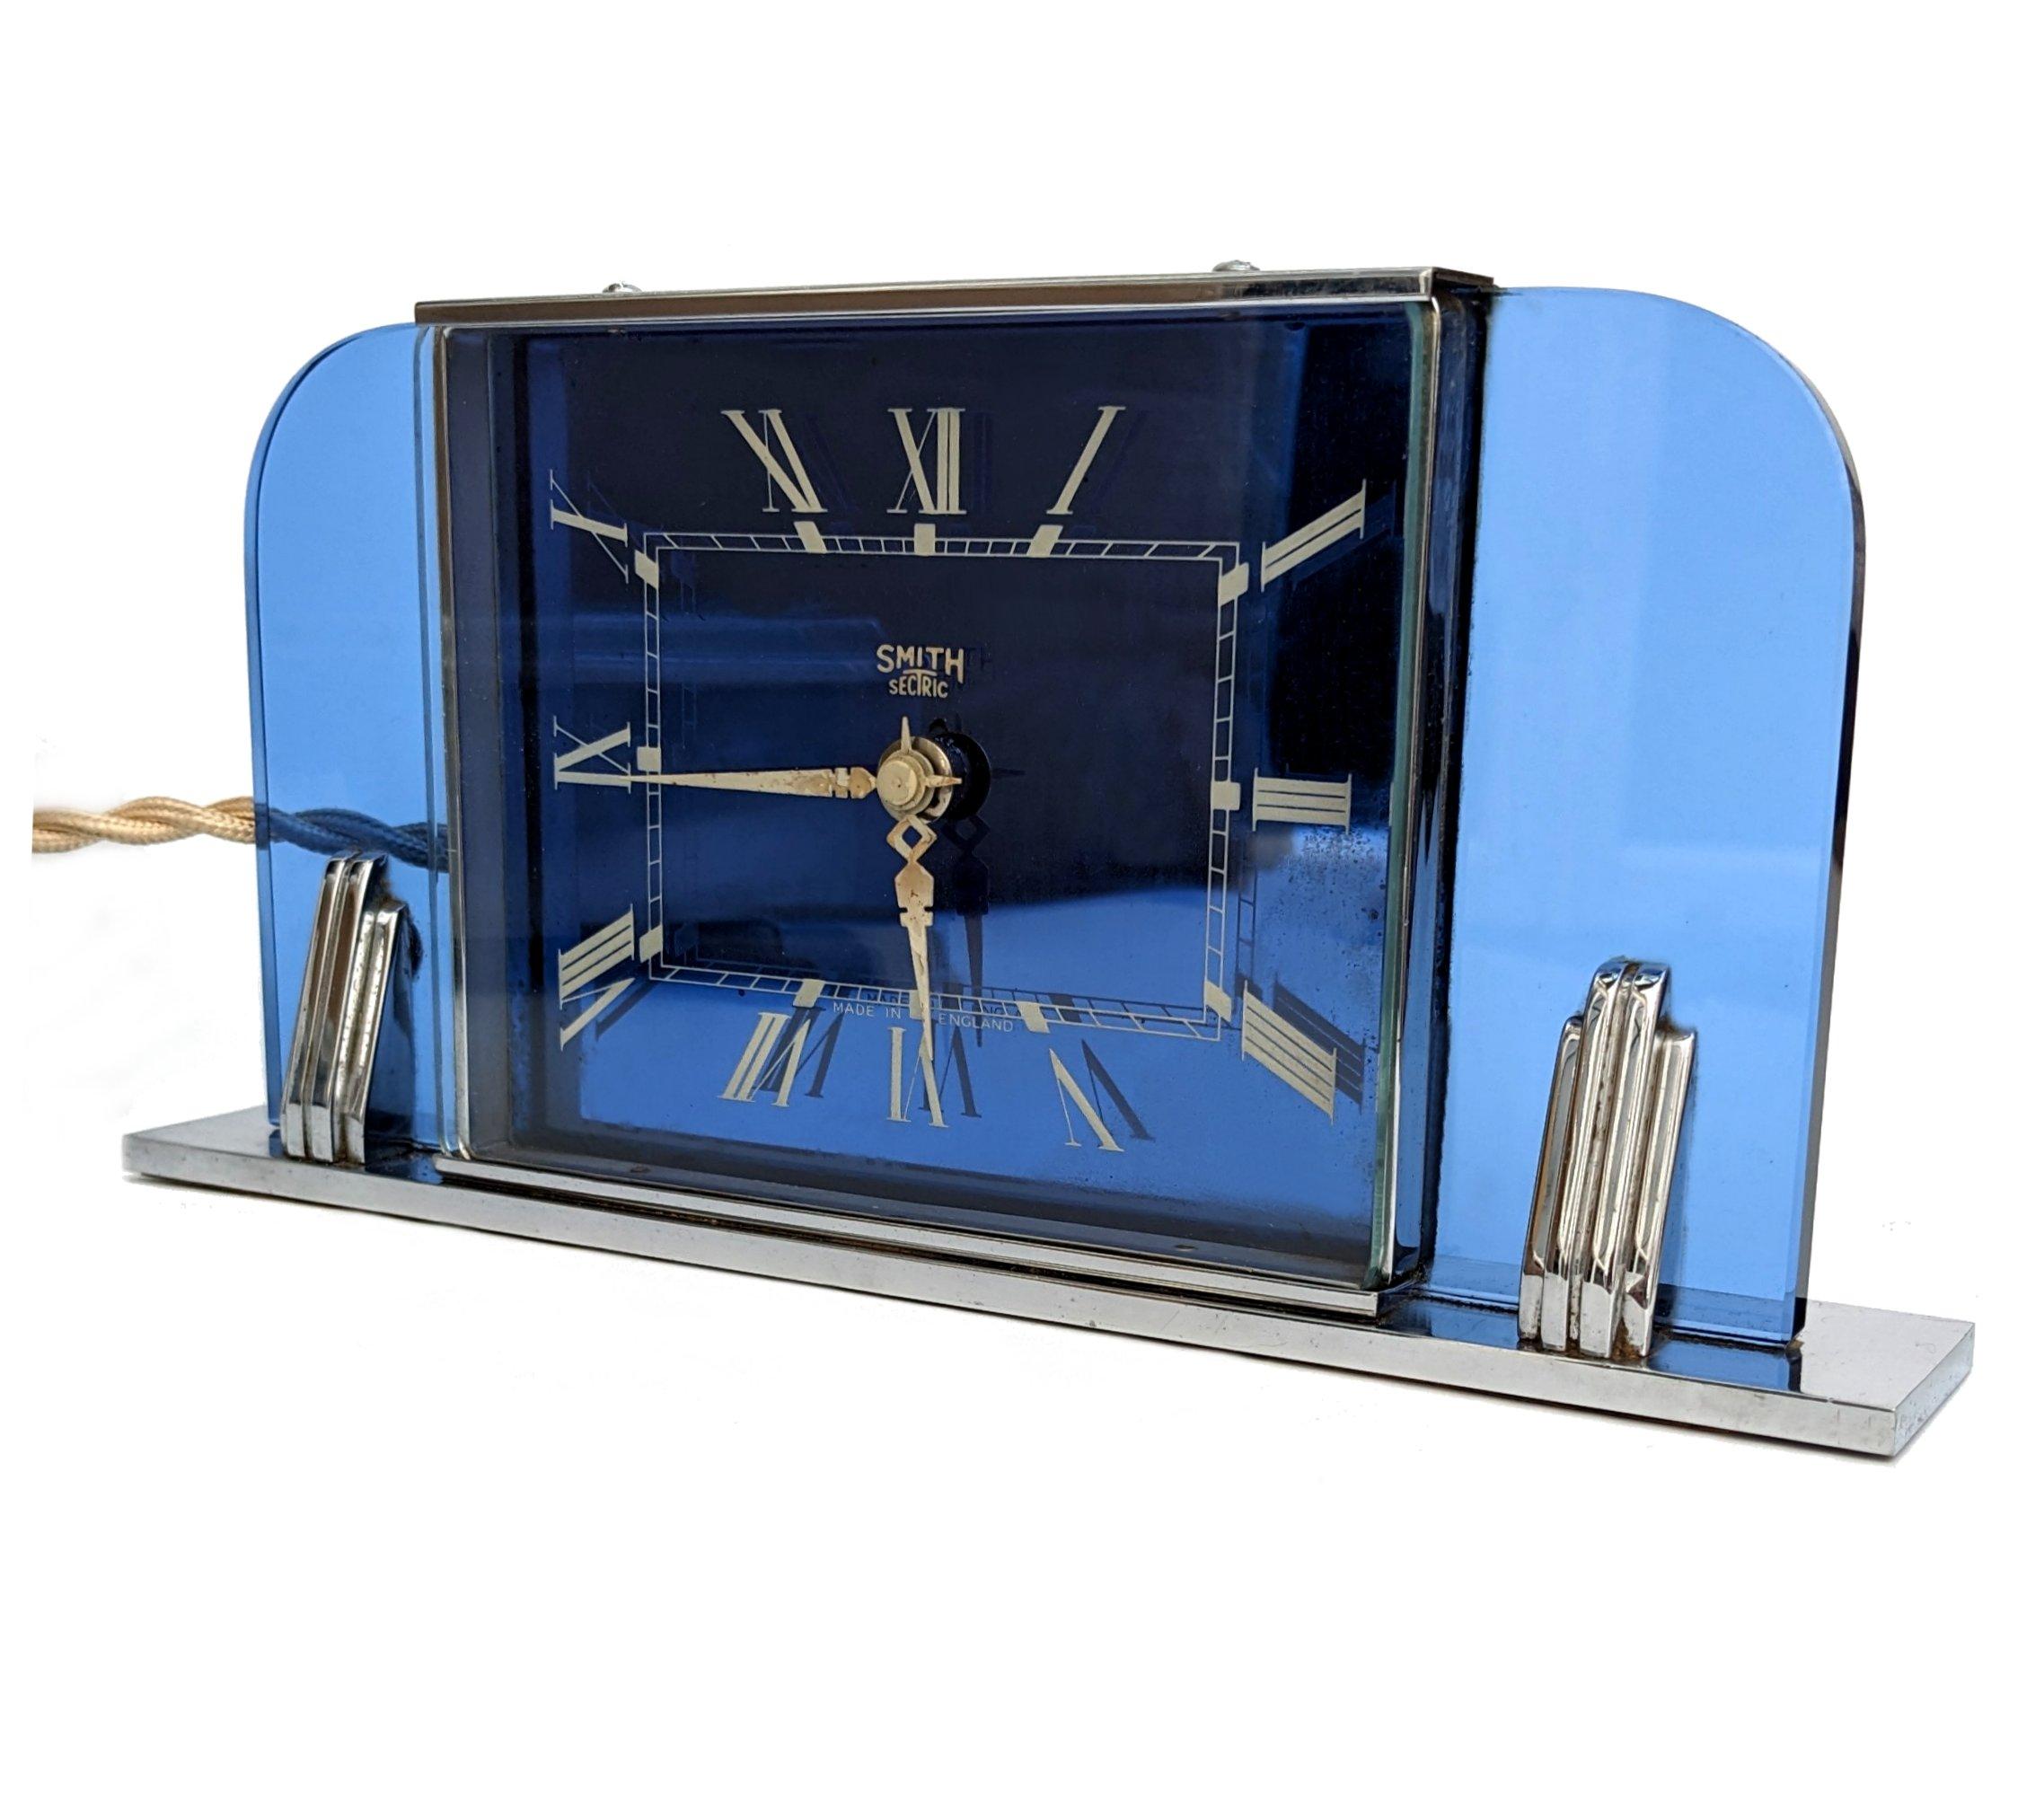 Très belle et très authentique horloge de cheminée Smith's Art Deco des années 1930, datant de 1937 ou peu après. Cette horloge possède un magnifique boîtier en verre bleu avec une très lourde base chromée et des montants chromés. Cette horloge est